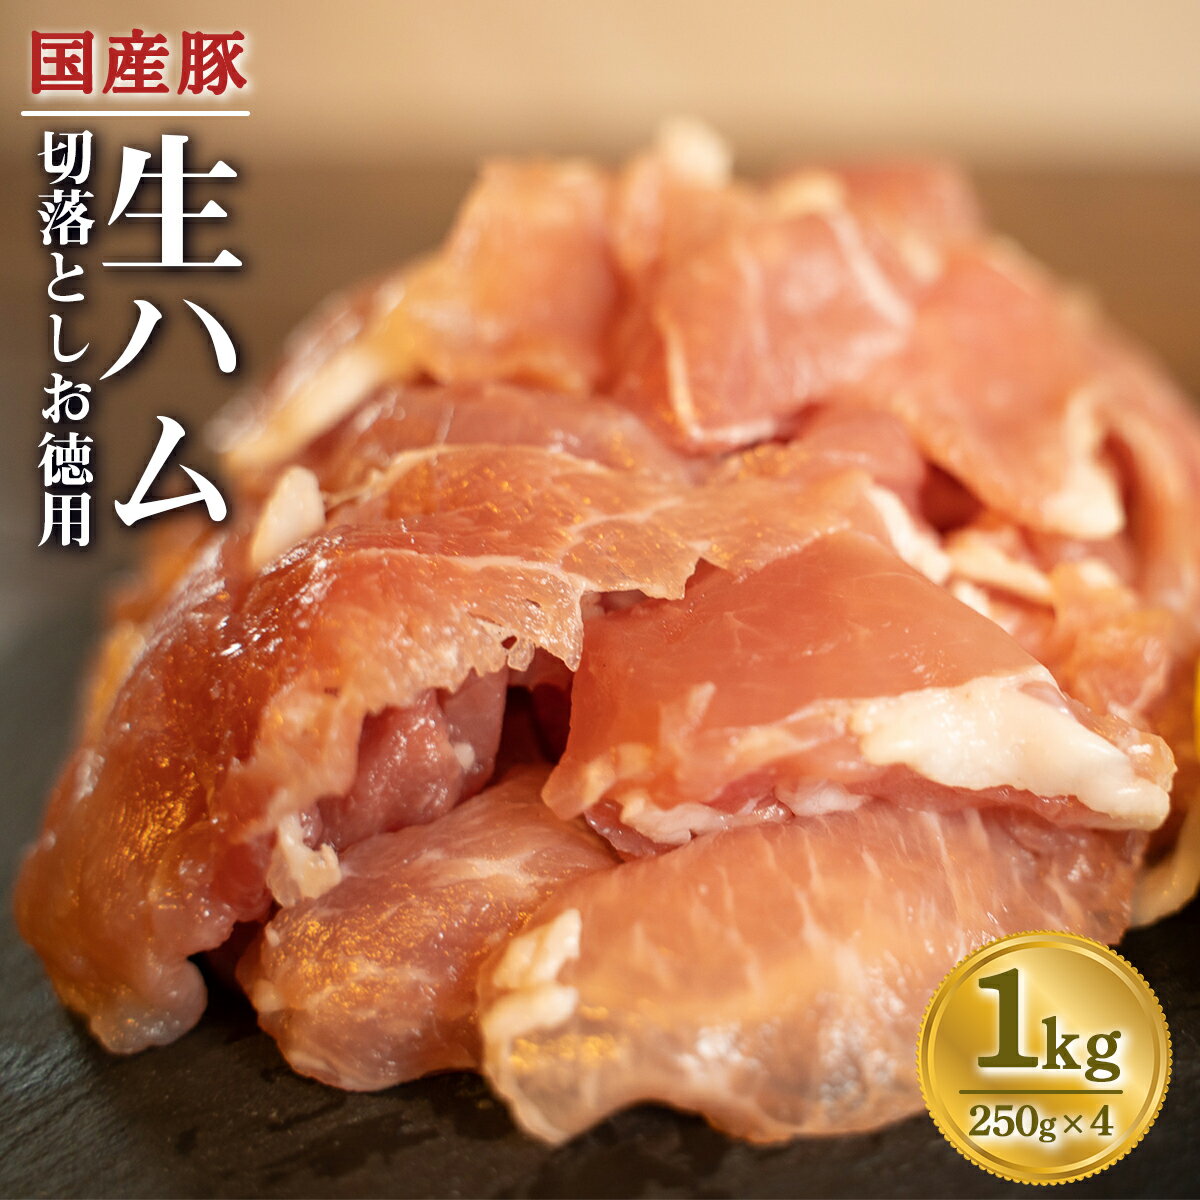 国産 豚 生ハム 切落し1kg 小分け 250g×4 お徳用 切り落とし ハム 送料無料 豚肉 おつまみ おかず 冷凍 訳あり